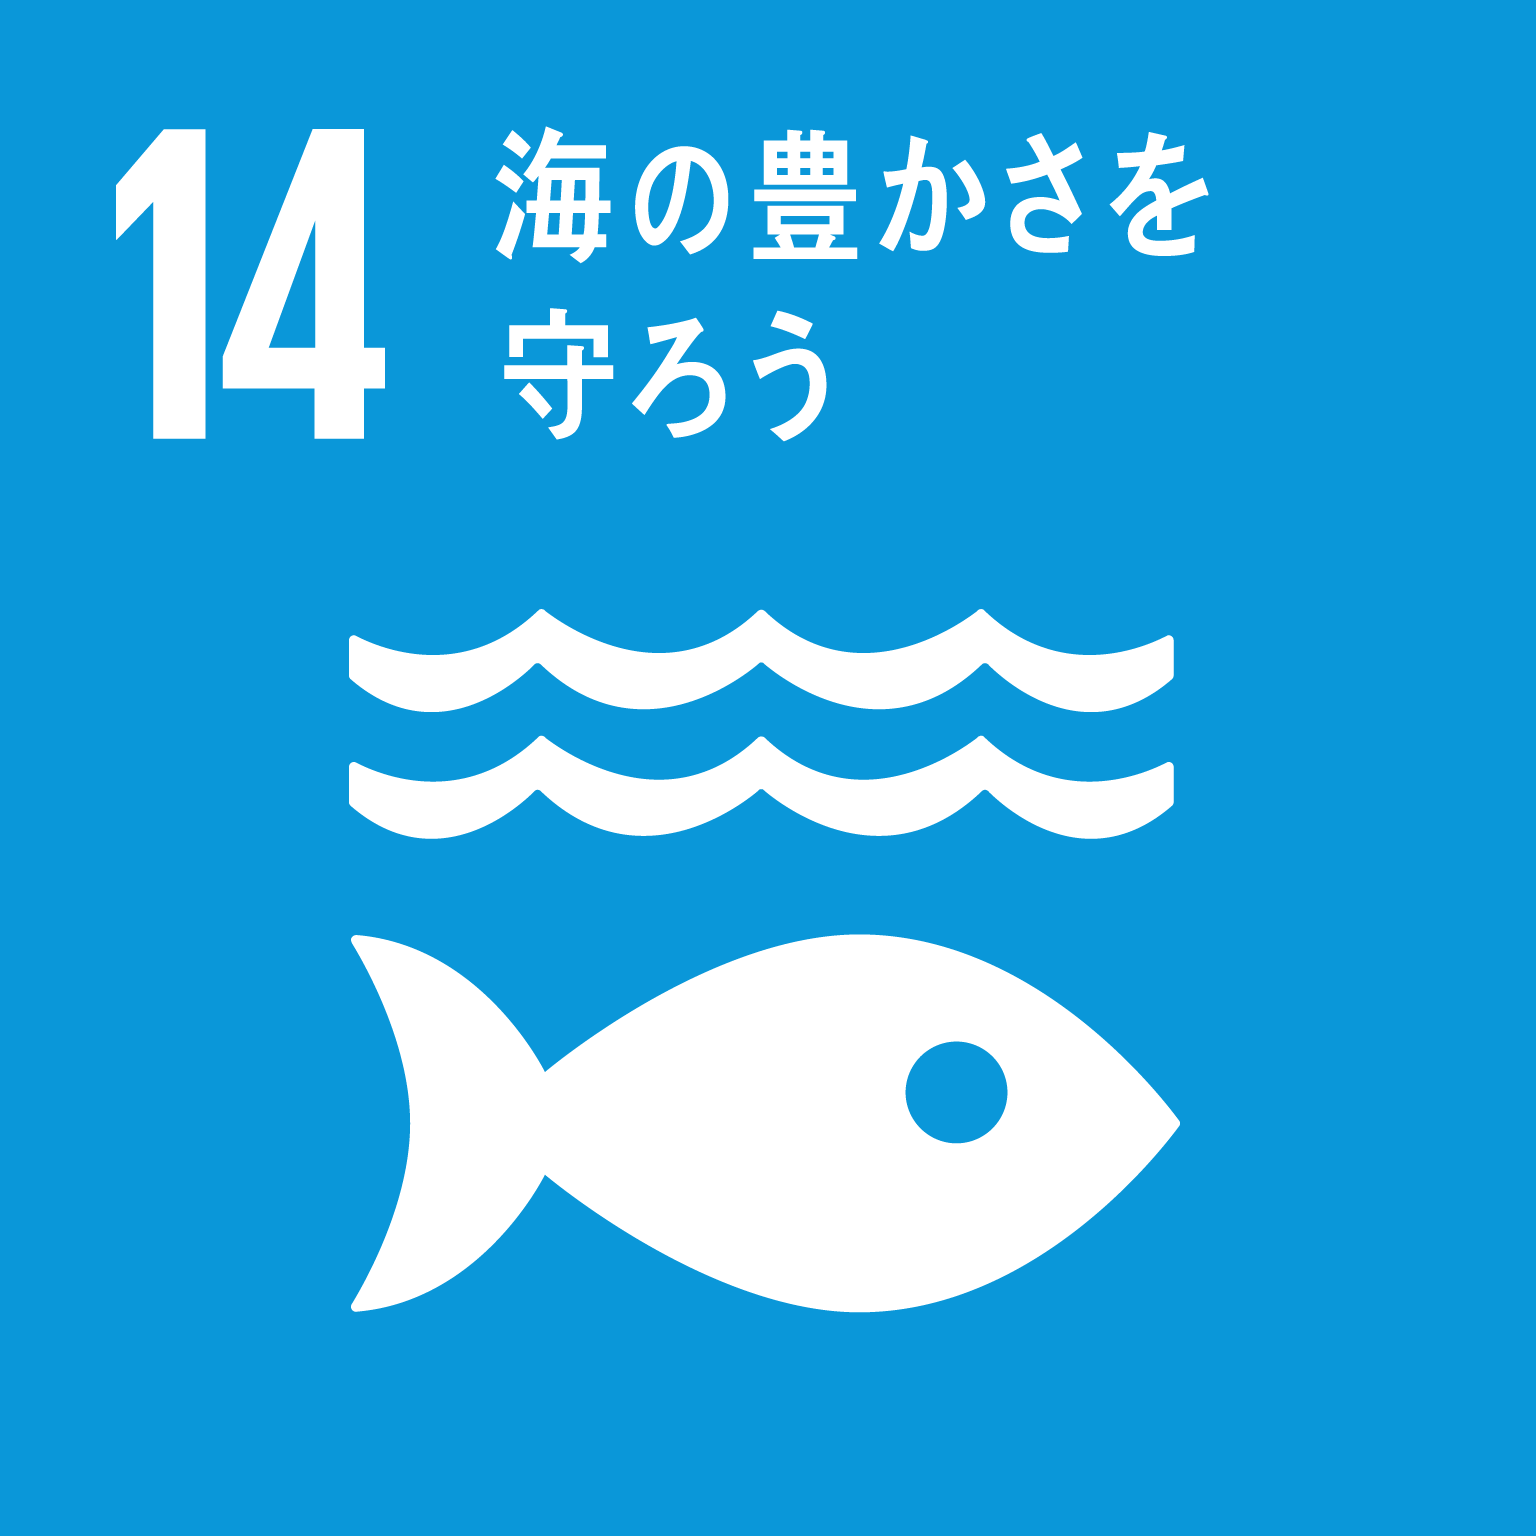 「14.海の豊かさを守ろう」の文字と目標14のロゴ